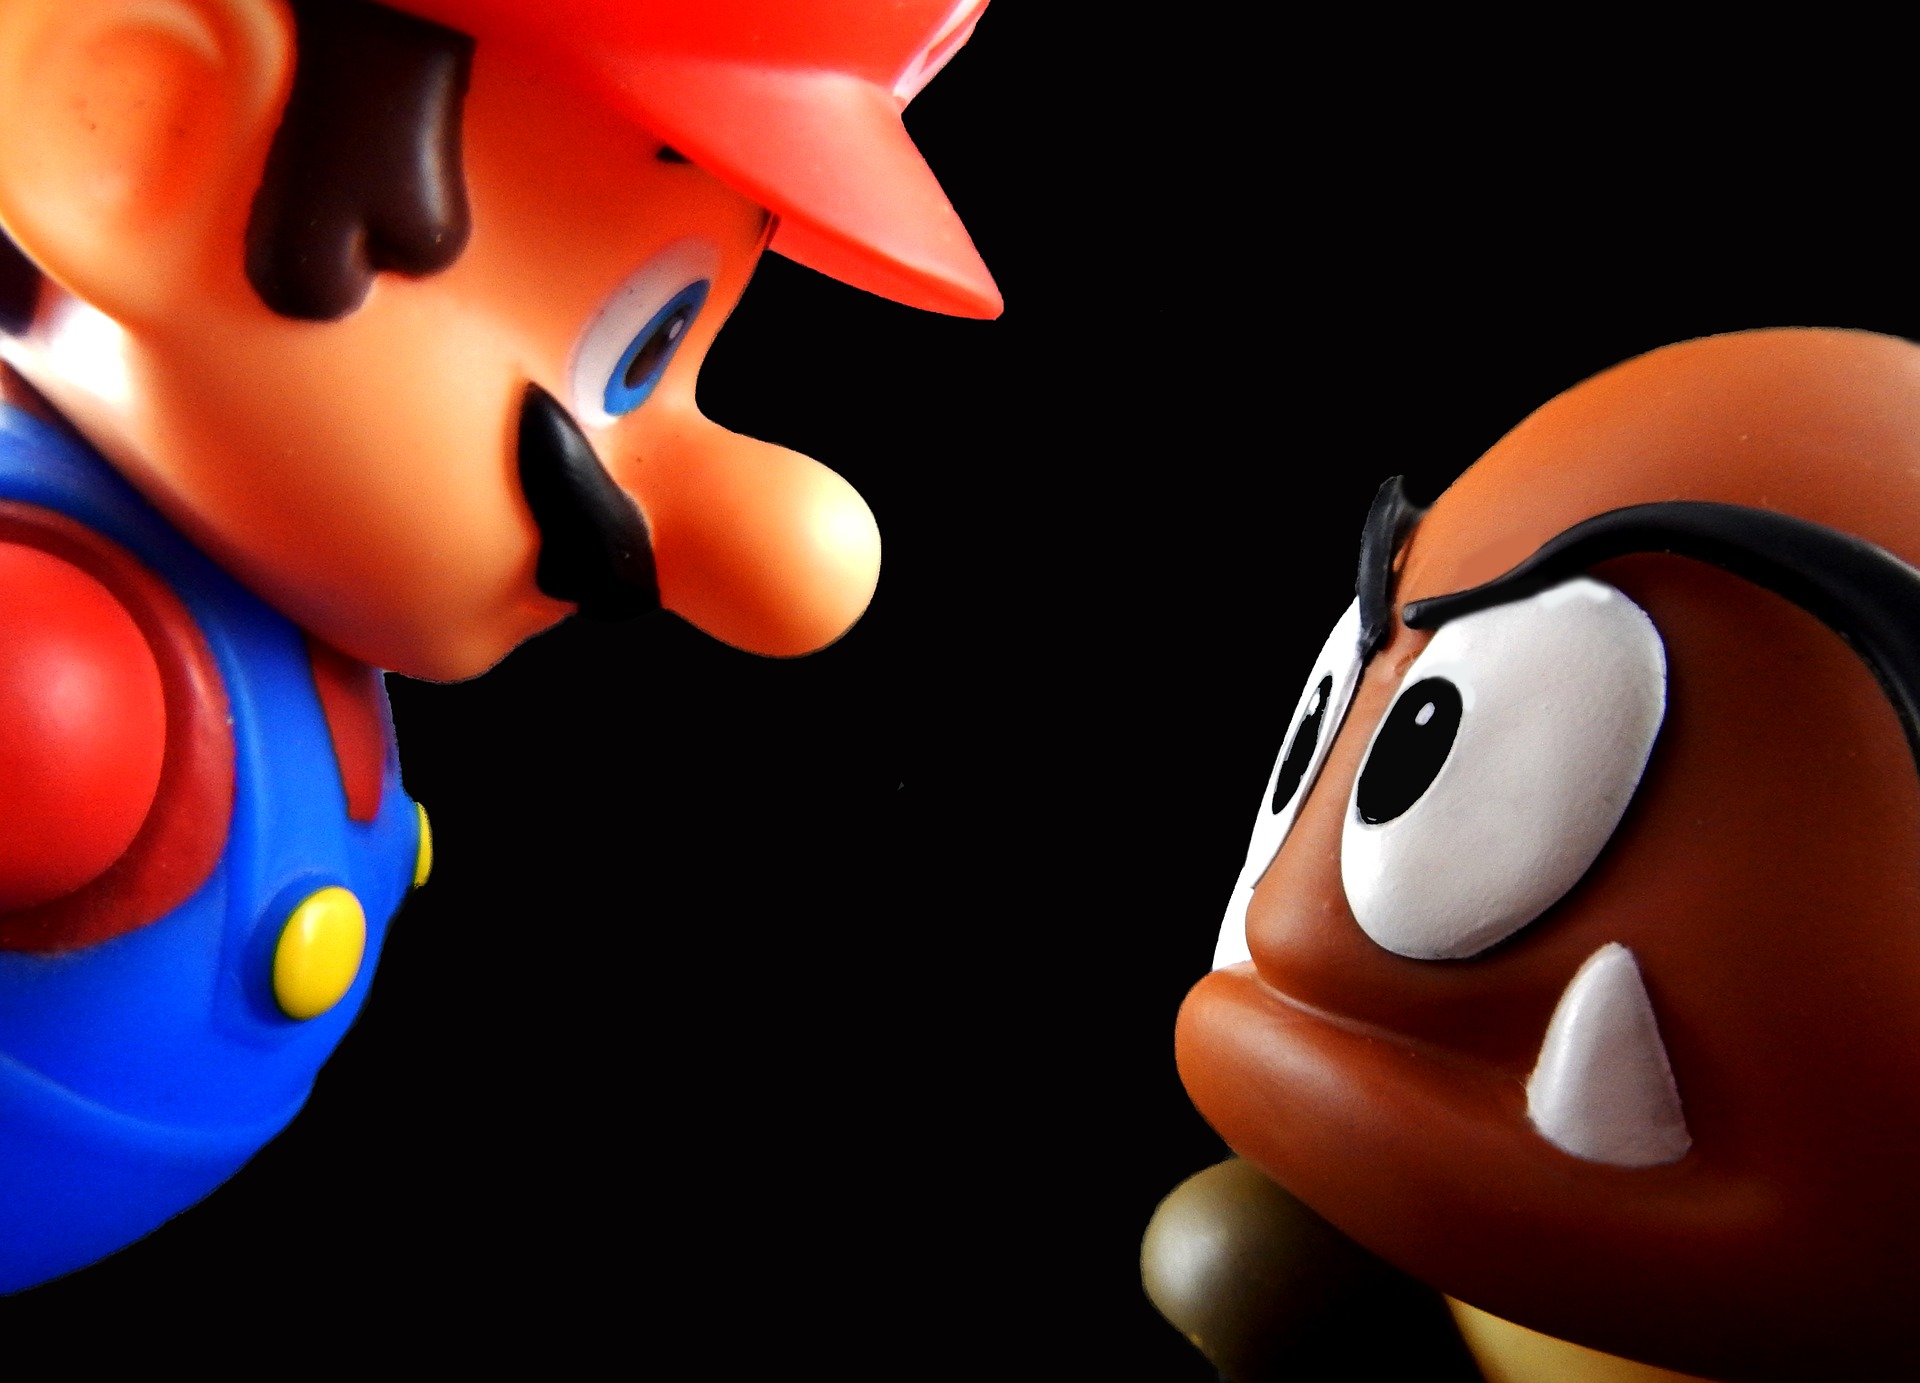 Mario and a goomba facing off!